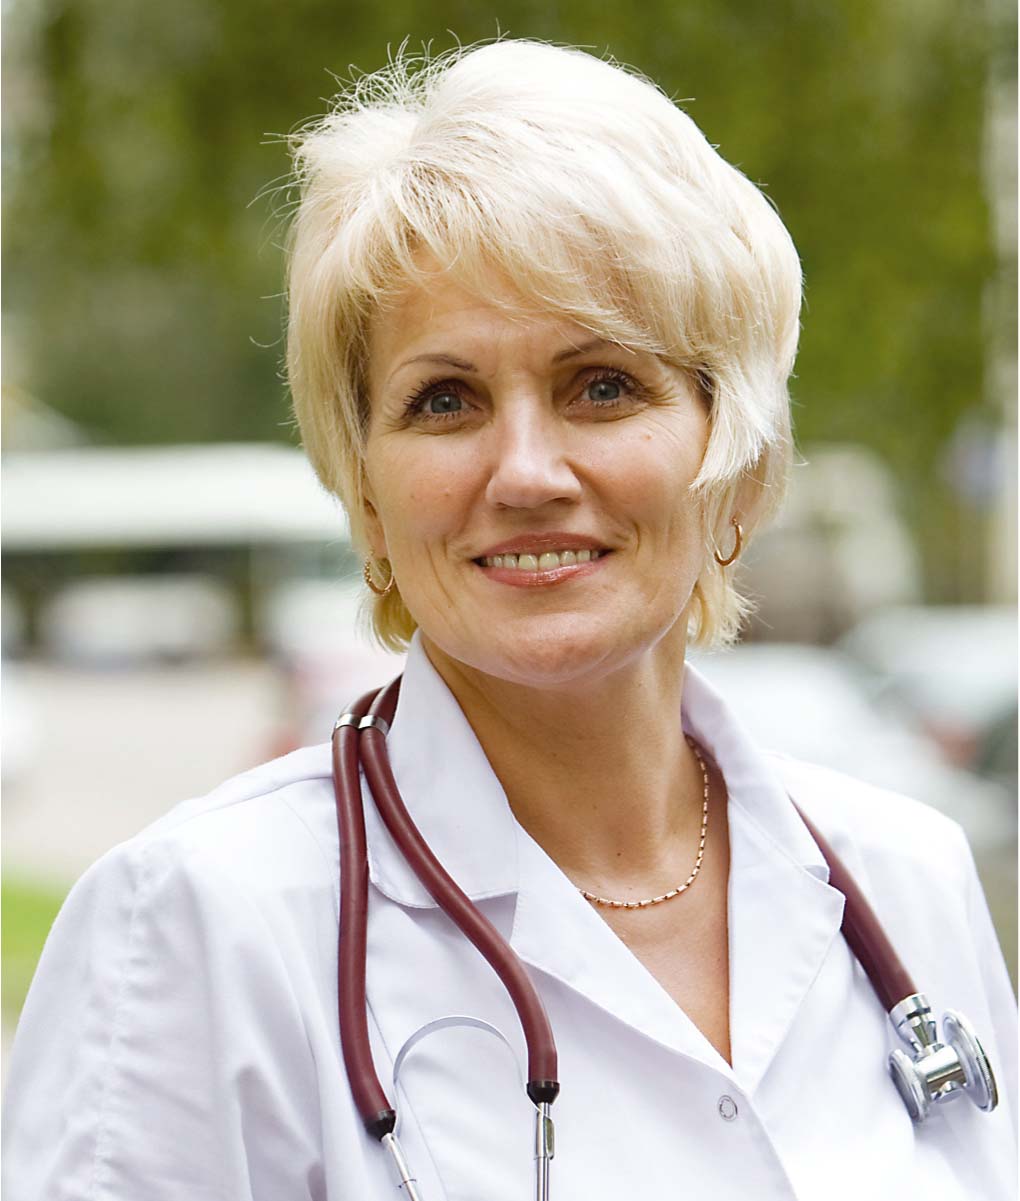 Sandra Mickeviča, ģimenes ārste: „Ideāli būtu, ja pacientam informāciju  par medikamentiem, kurus viņš nepanes, iespiestu pasē”